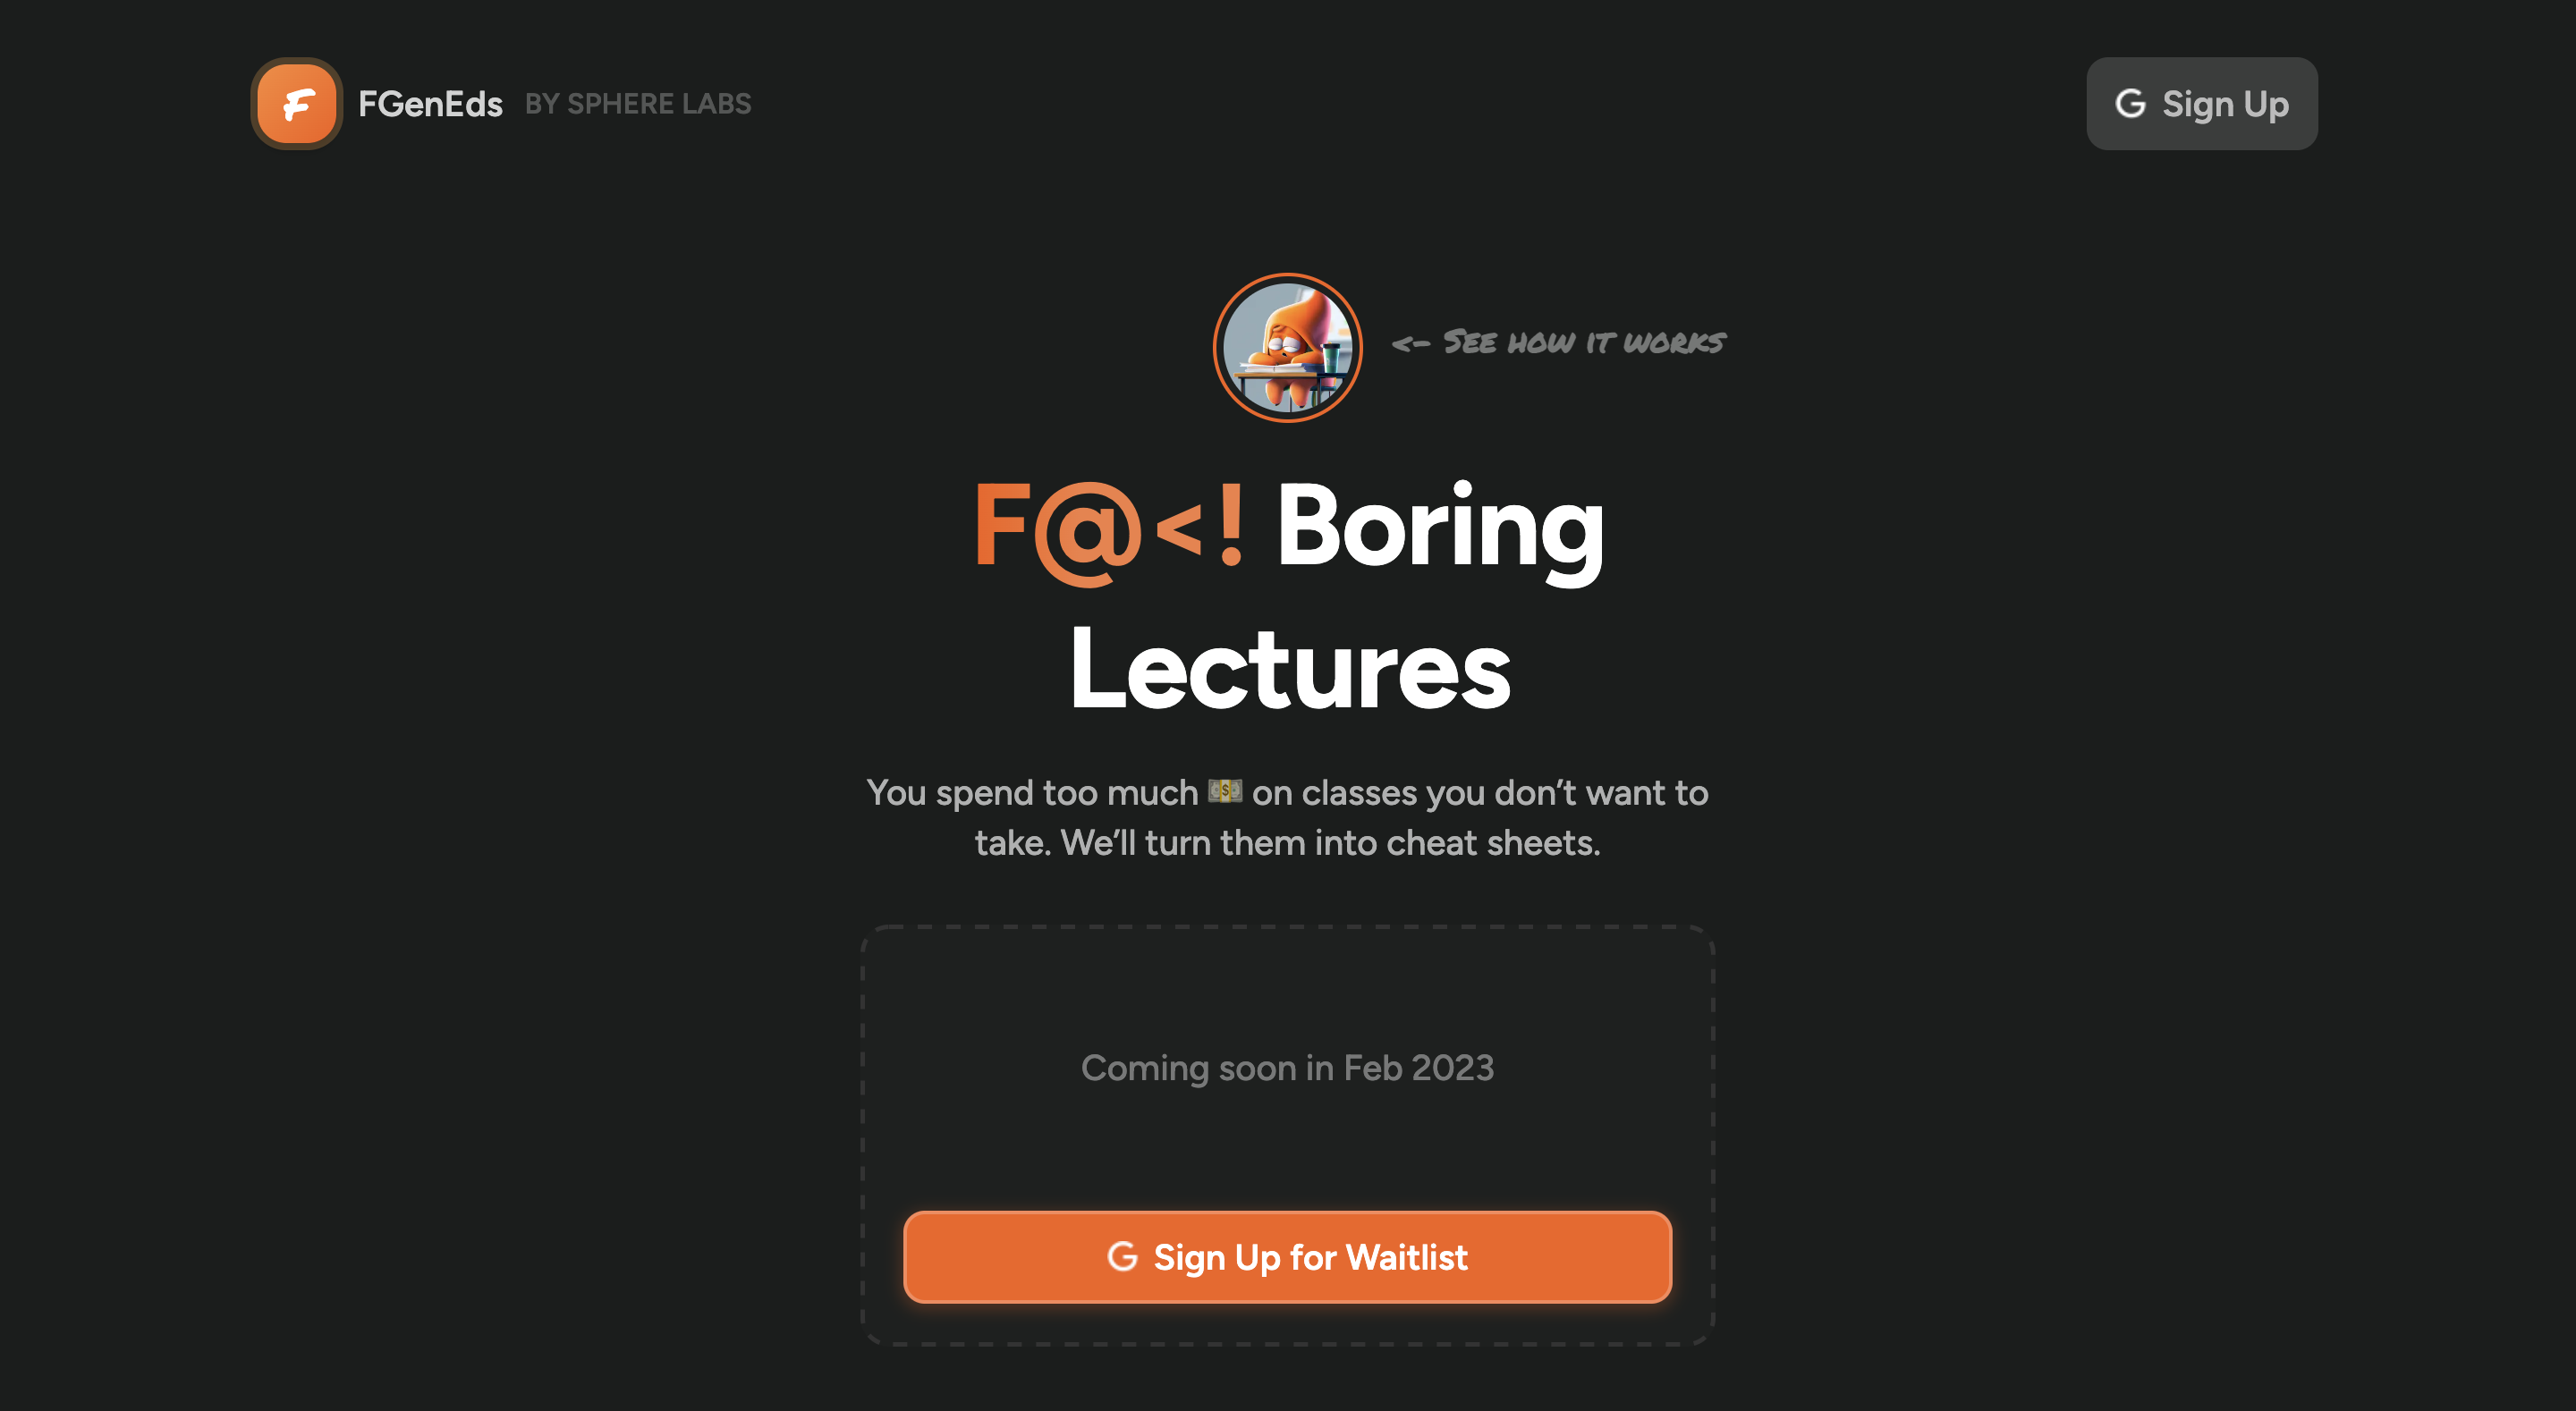 FGENDS - Ein Werkzeug zum Zusammenfassen von Vorträgen und Bildungsmaterialien